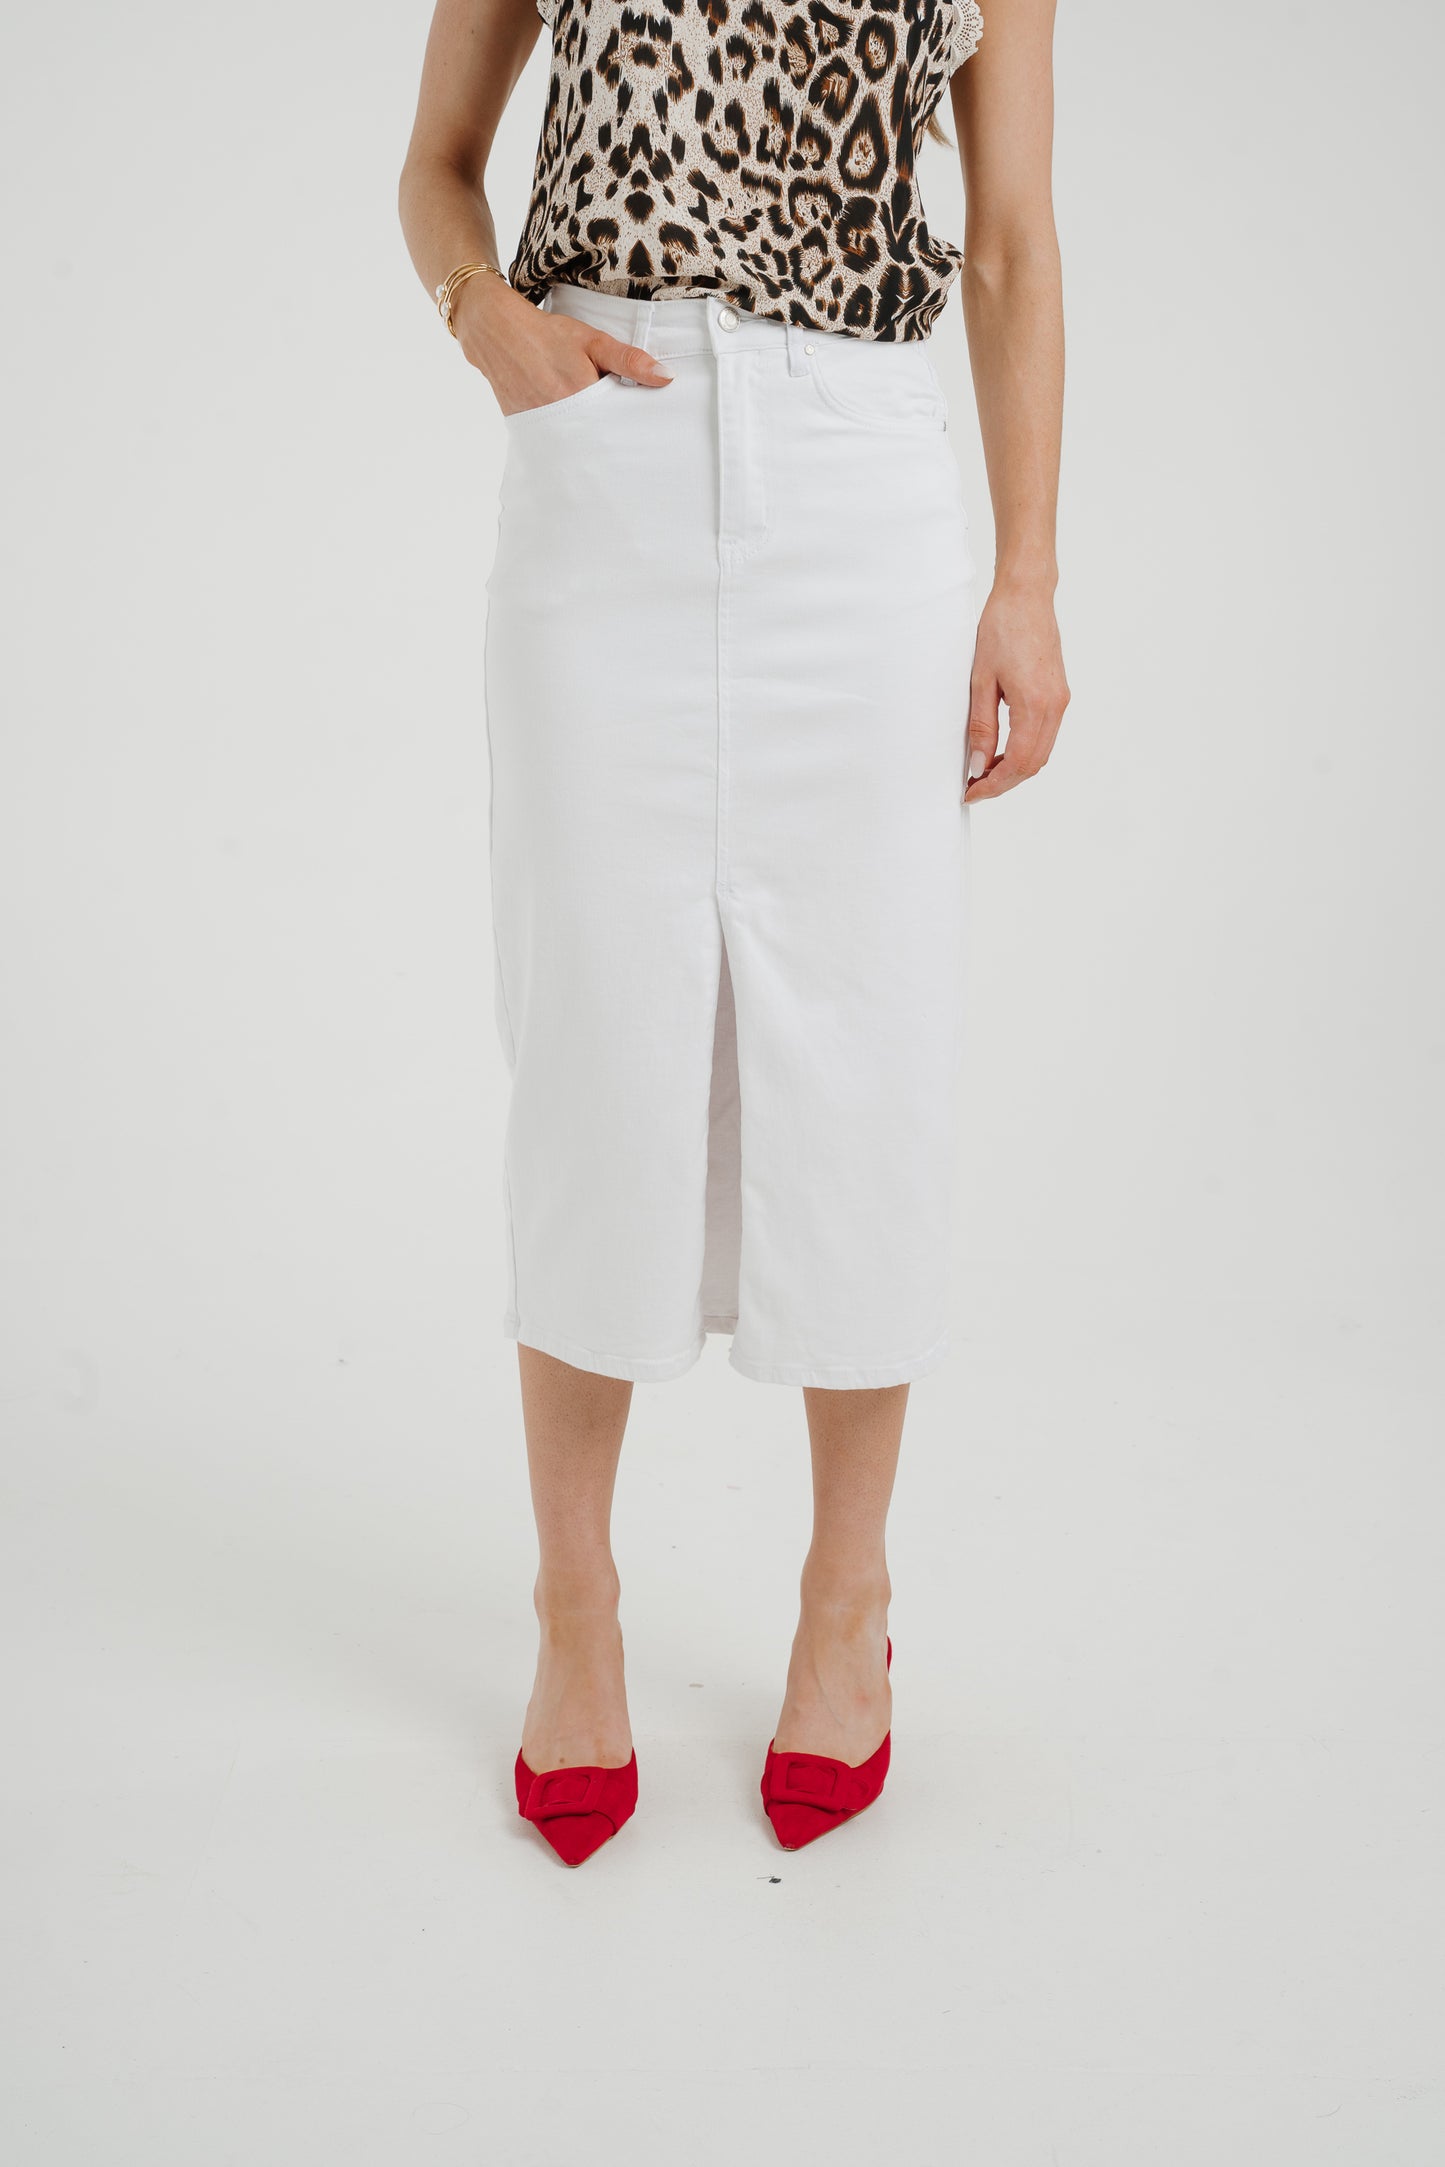 Naomi Denim Midi Skirt In White